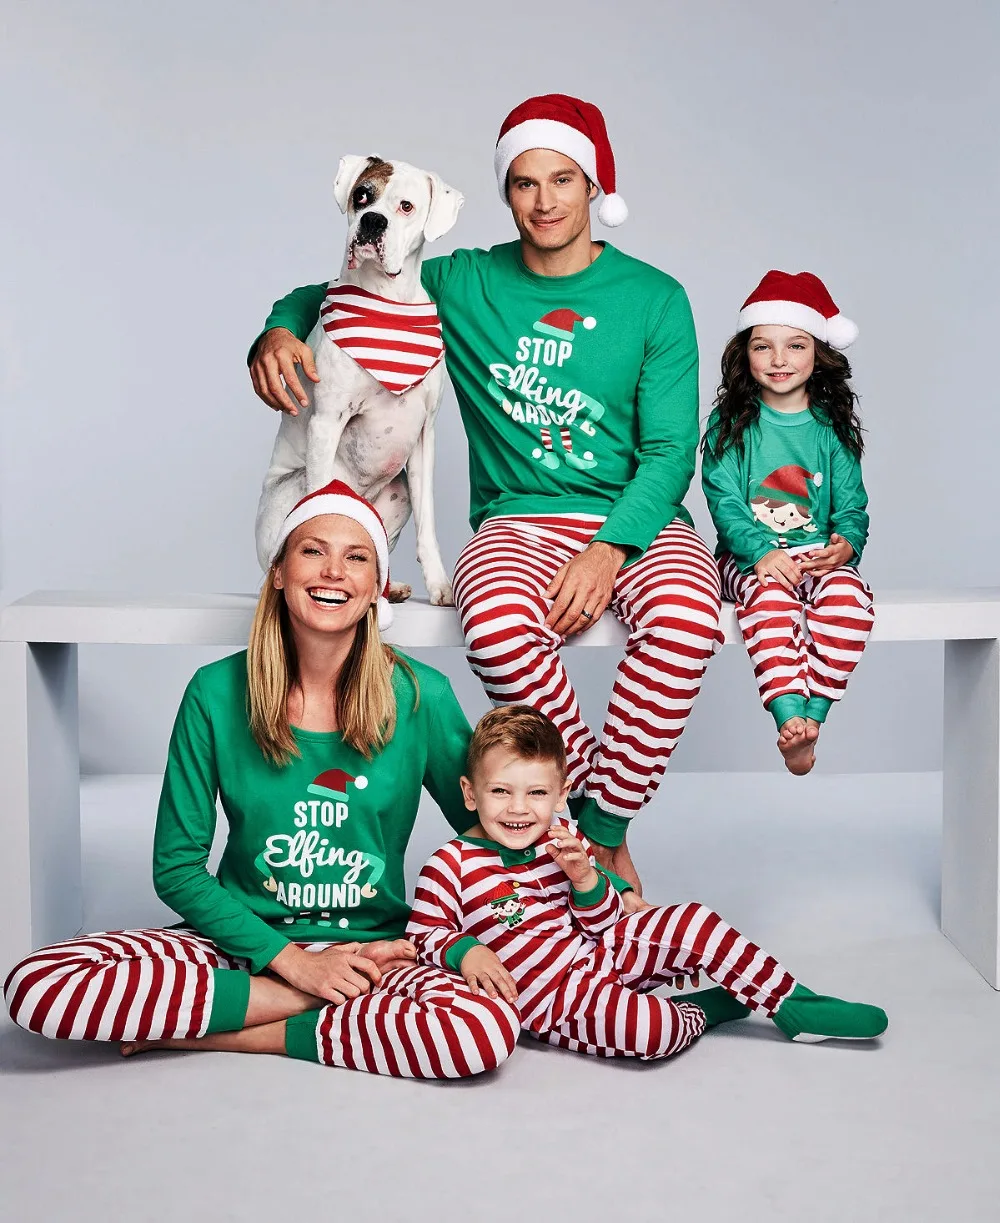 Рождественский пижамный комплект, одинаковые комплекты для семьи, пижамный комплект в зеленую полоску, одежда для сна, Рождественский детский комбинезон